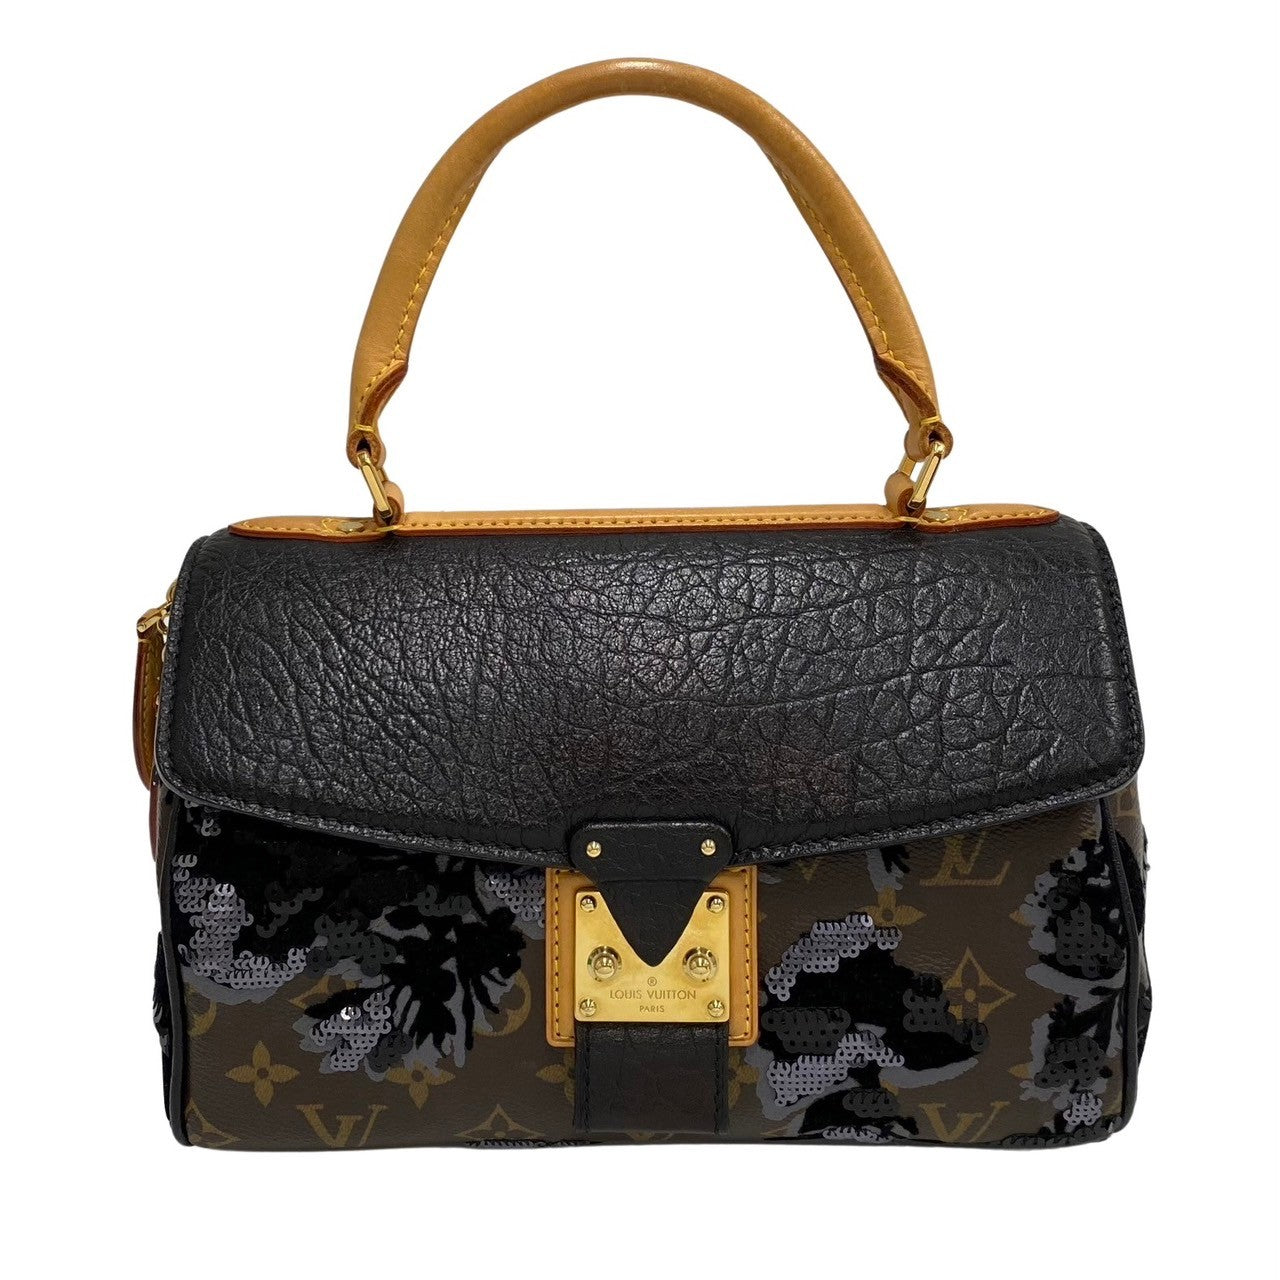 Louis Vuitton De Jais Carrousel Leather Handbag M40434 in Excellent condition